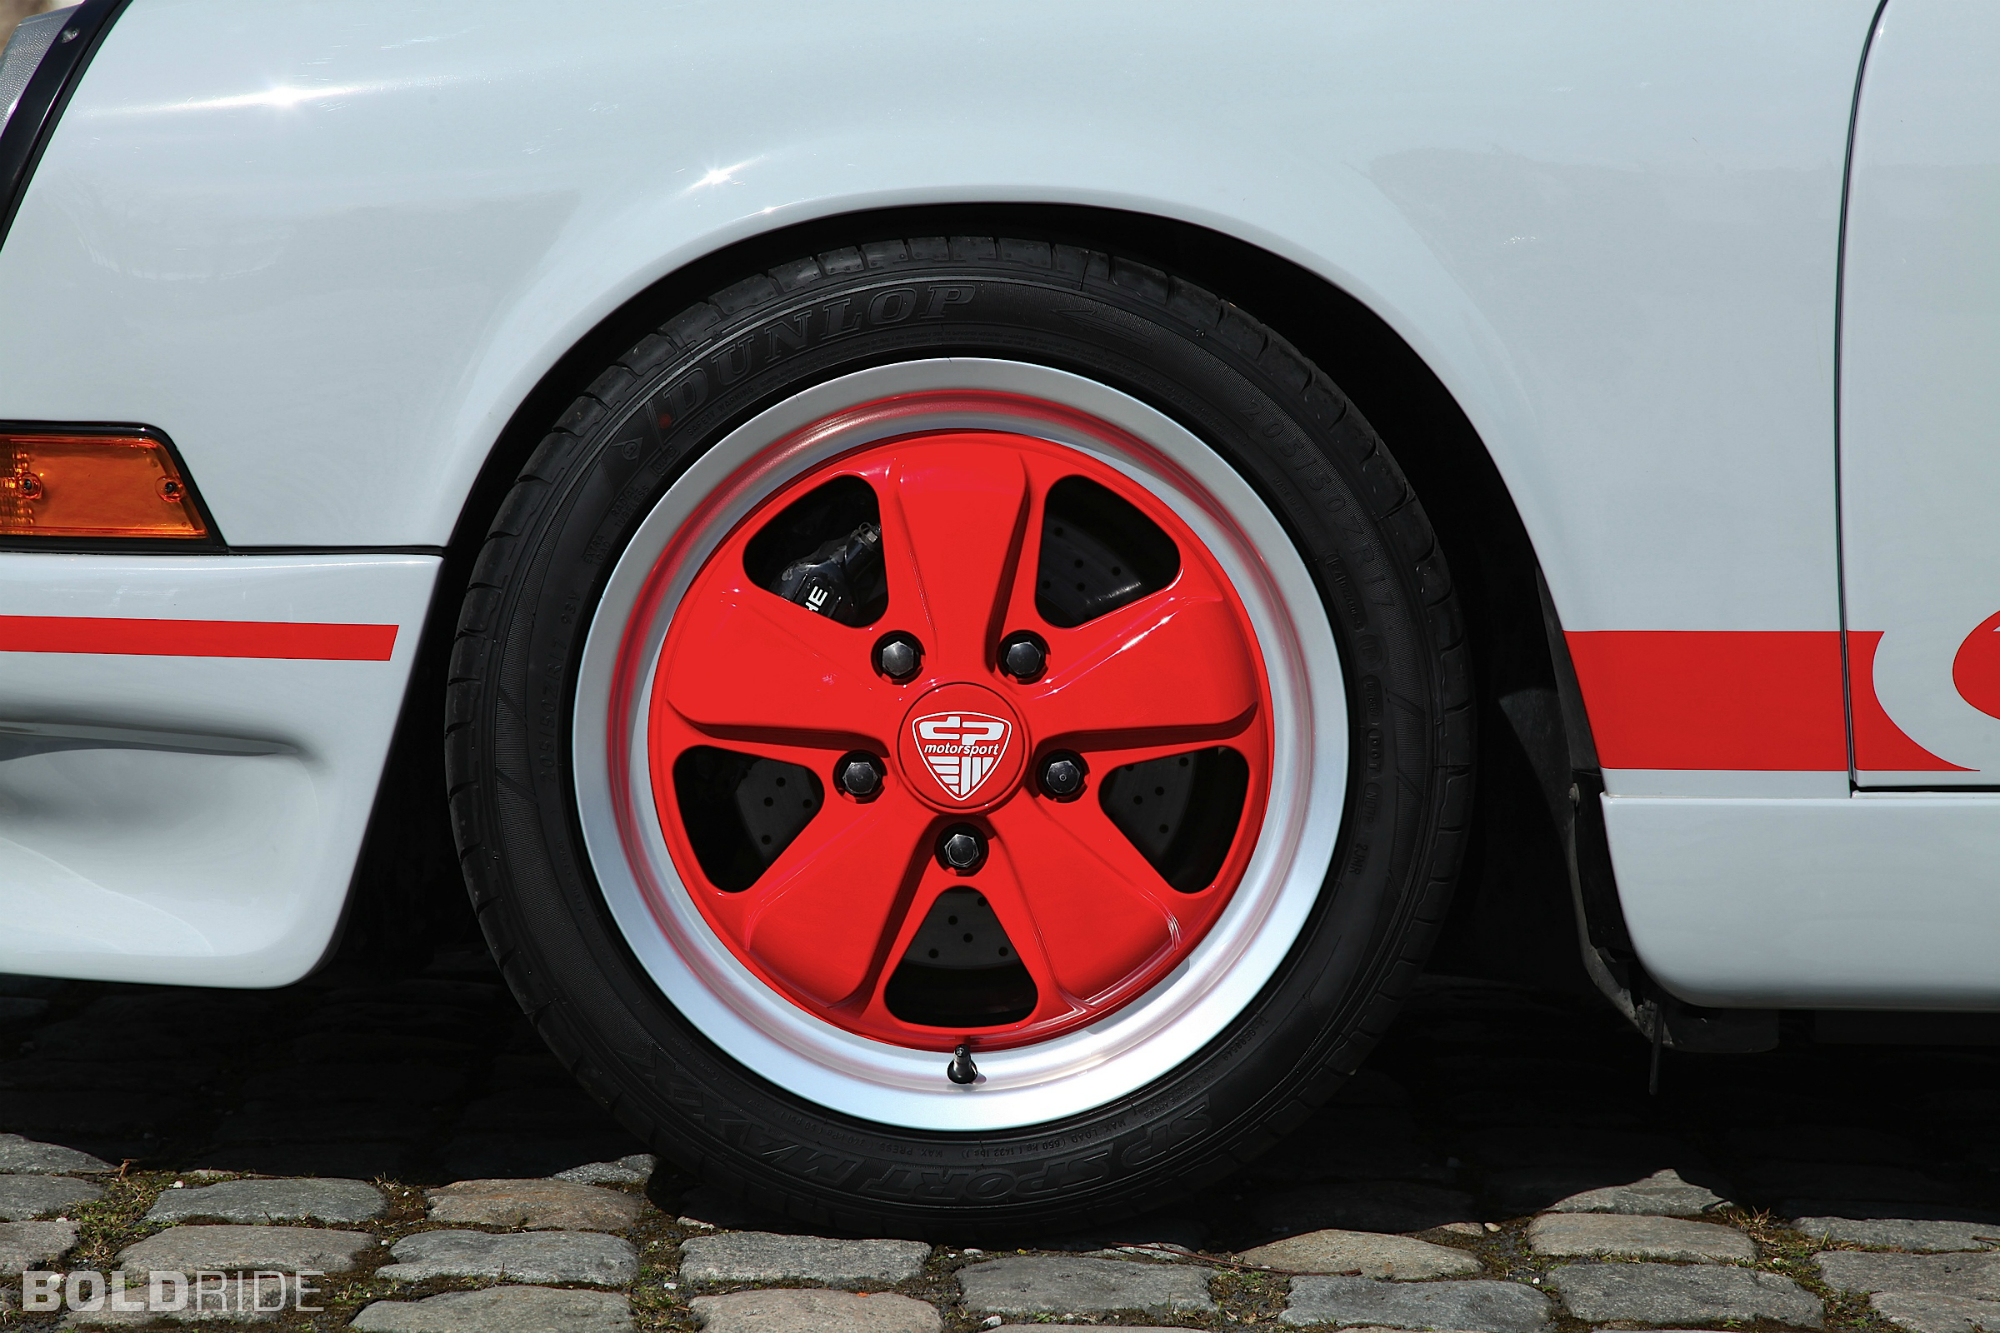 1973, Dp motorsport, Porsche, 911 rs, 911, Classic, Wheel, Wheels Wallpaper